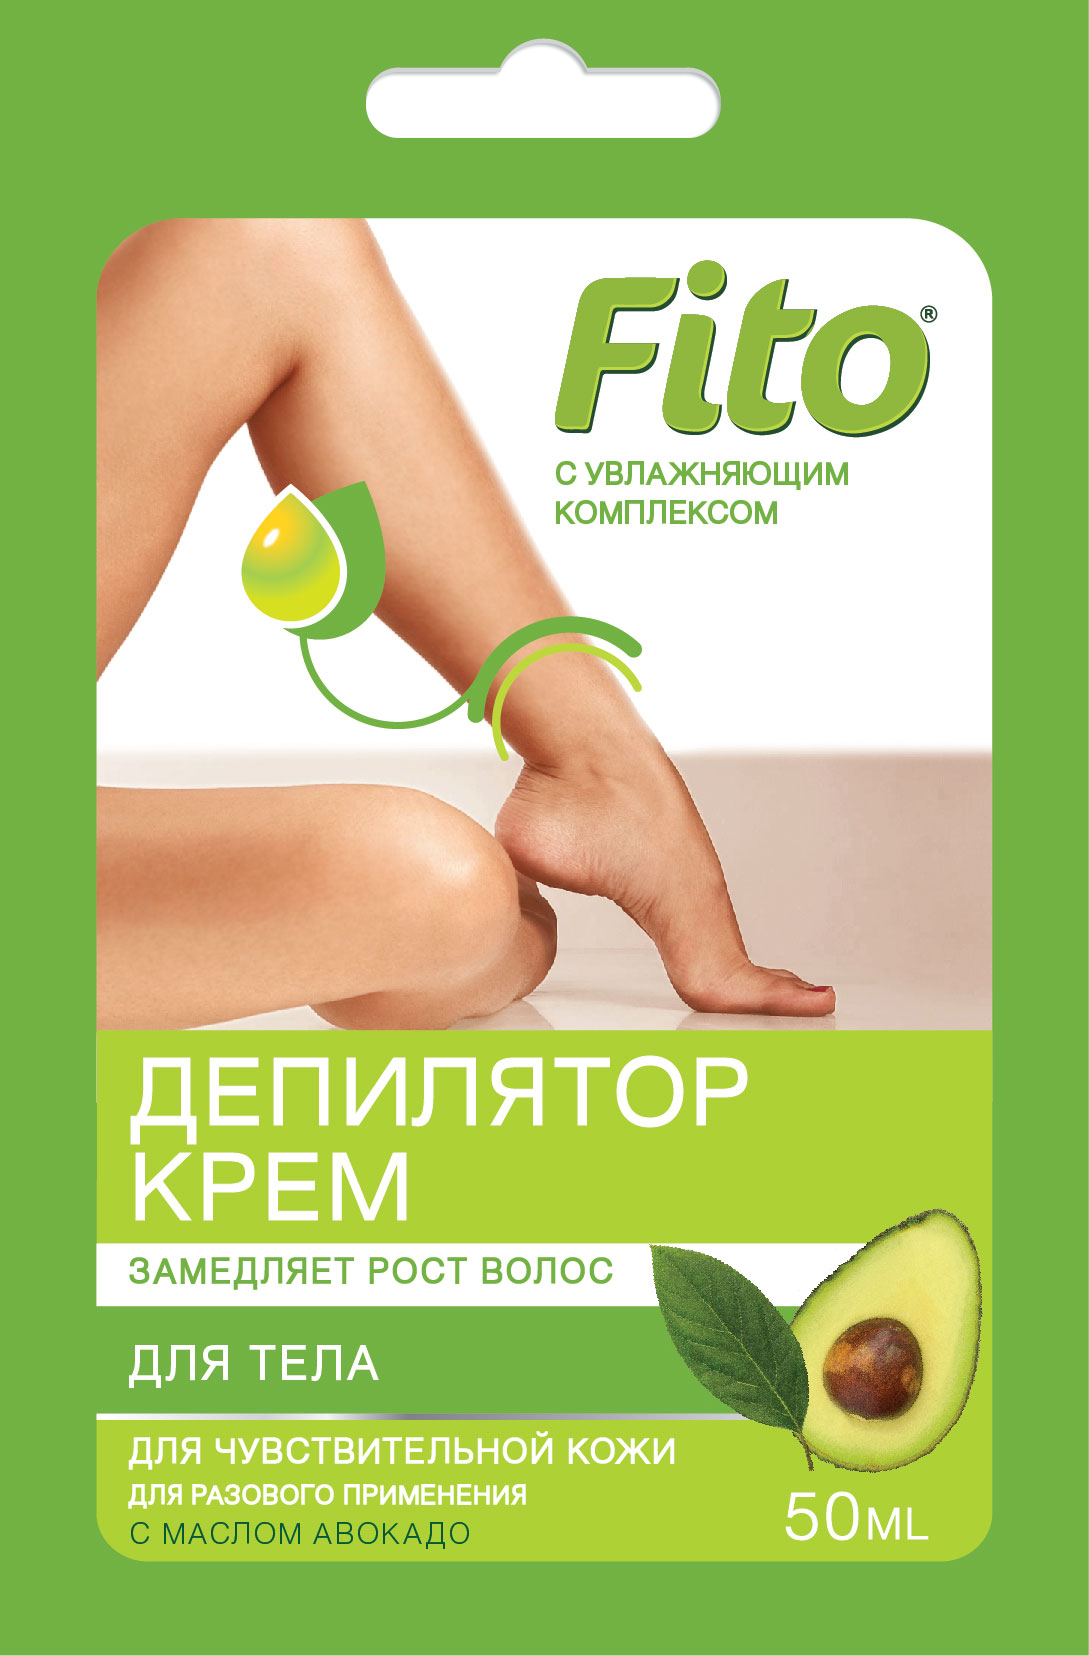 Крем для депиляции Fito с маслом авокадо для чувствительной кожи 50мл - в интернет-магазине tut-beauty.by